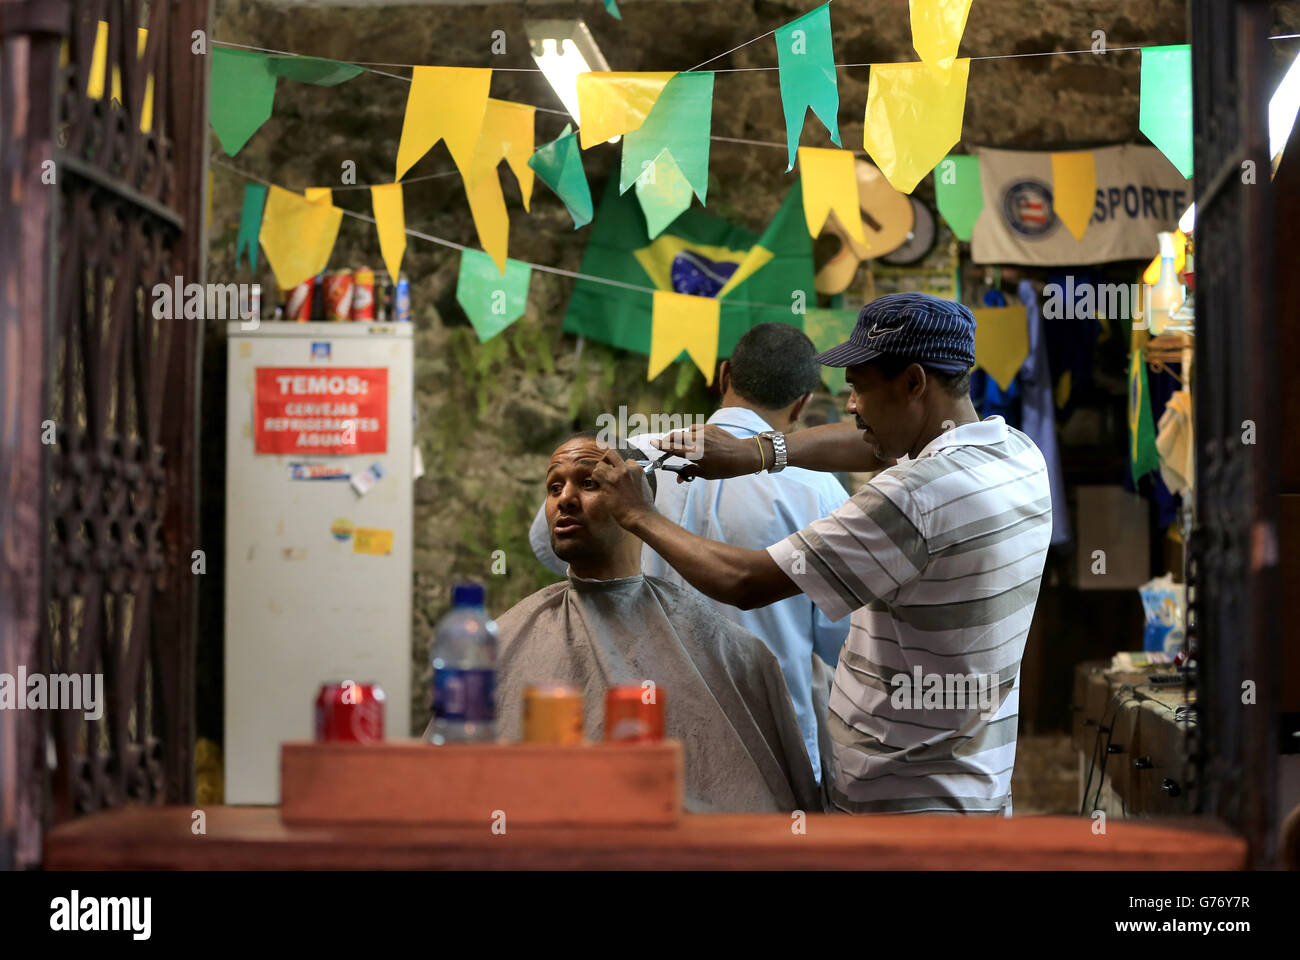 Fußball - FIFA Fußball-Weltmeisterschaft 2014 - Salvador City Stock. Der Mann bekommt im Friseur im historischen Zentrum von Salvador die Haare geschnitten Stockfoto